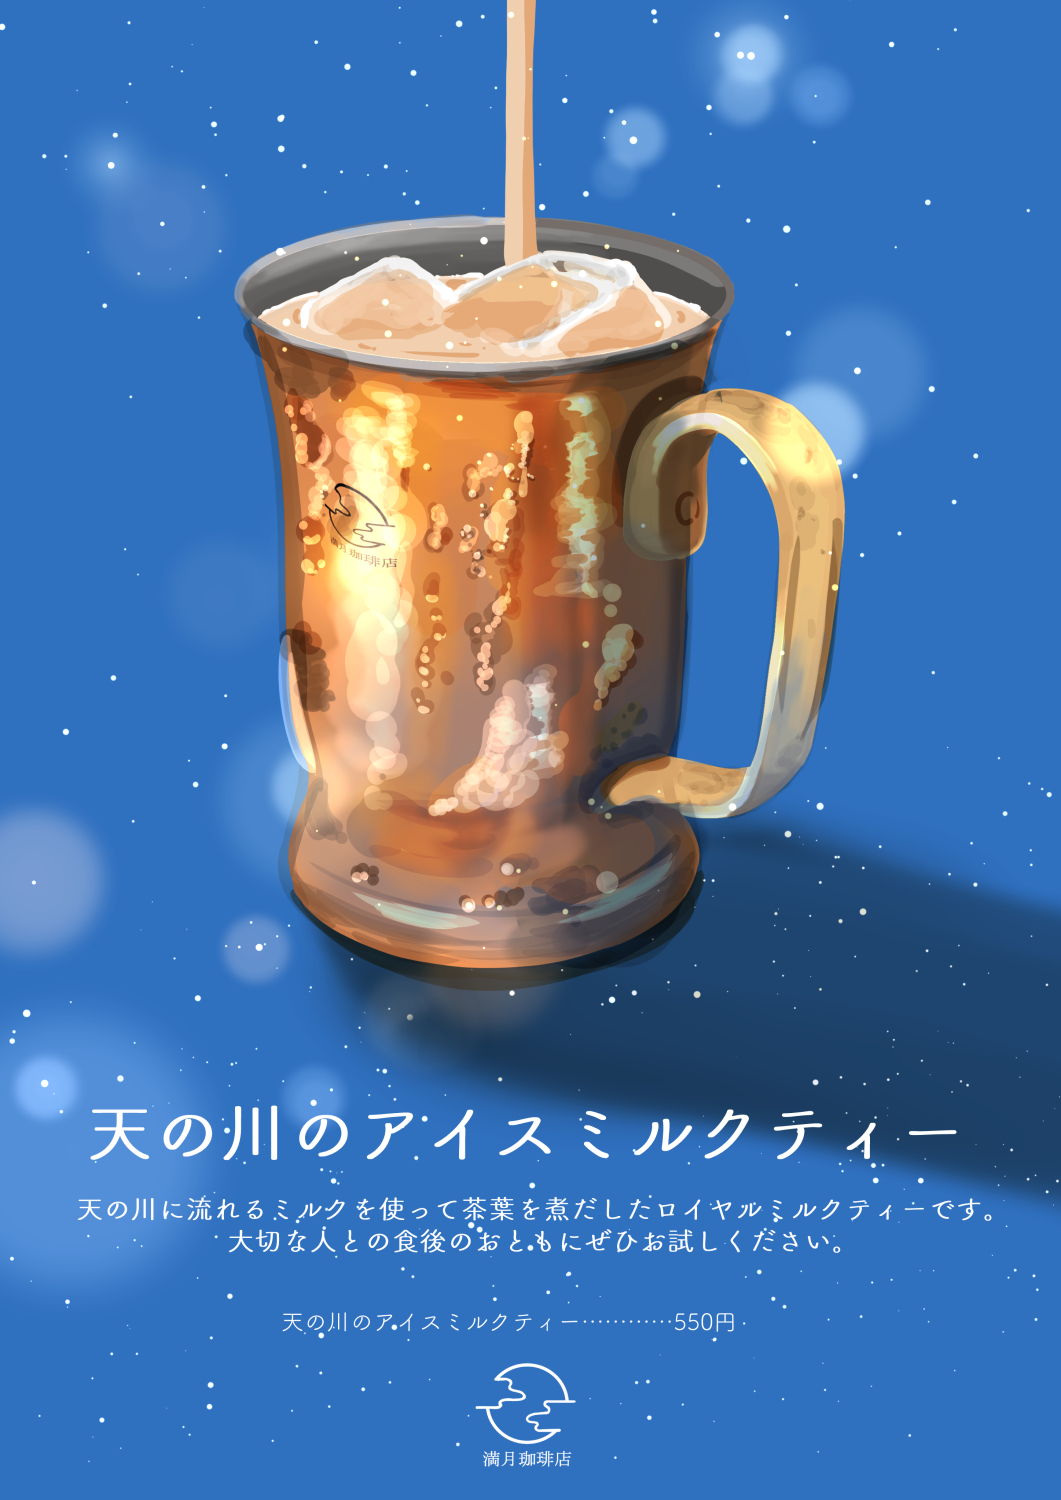 银河的冰奶茶-原创饮料